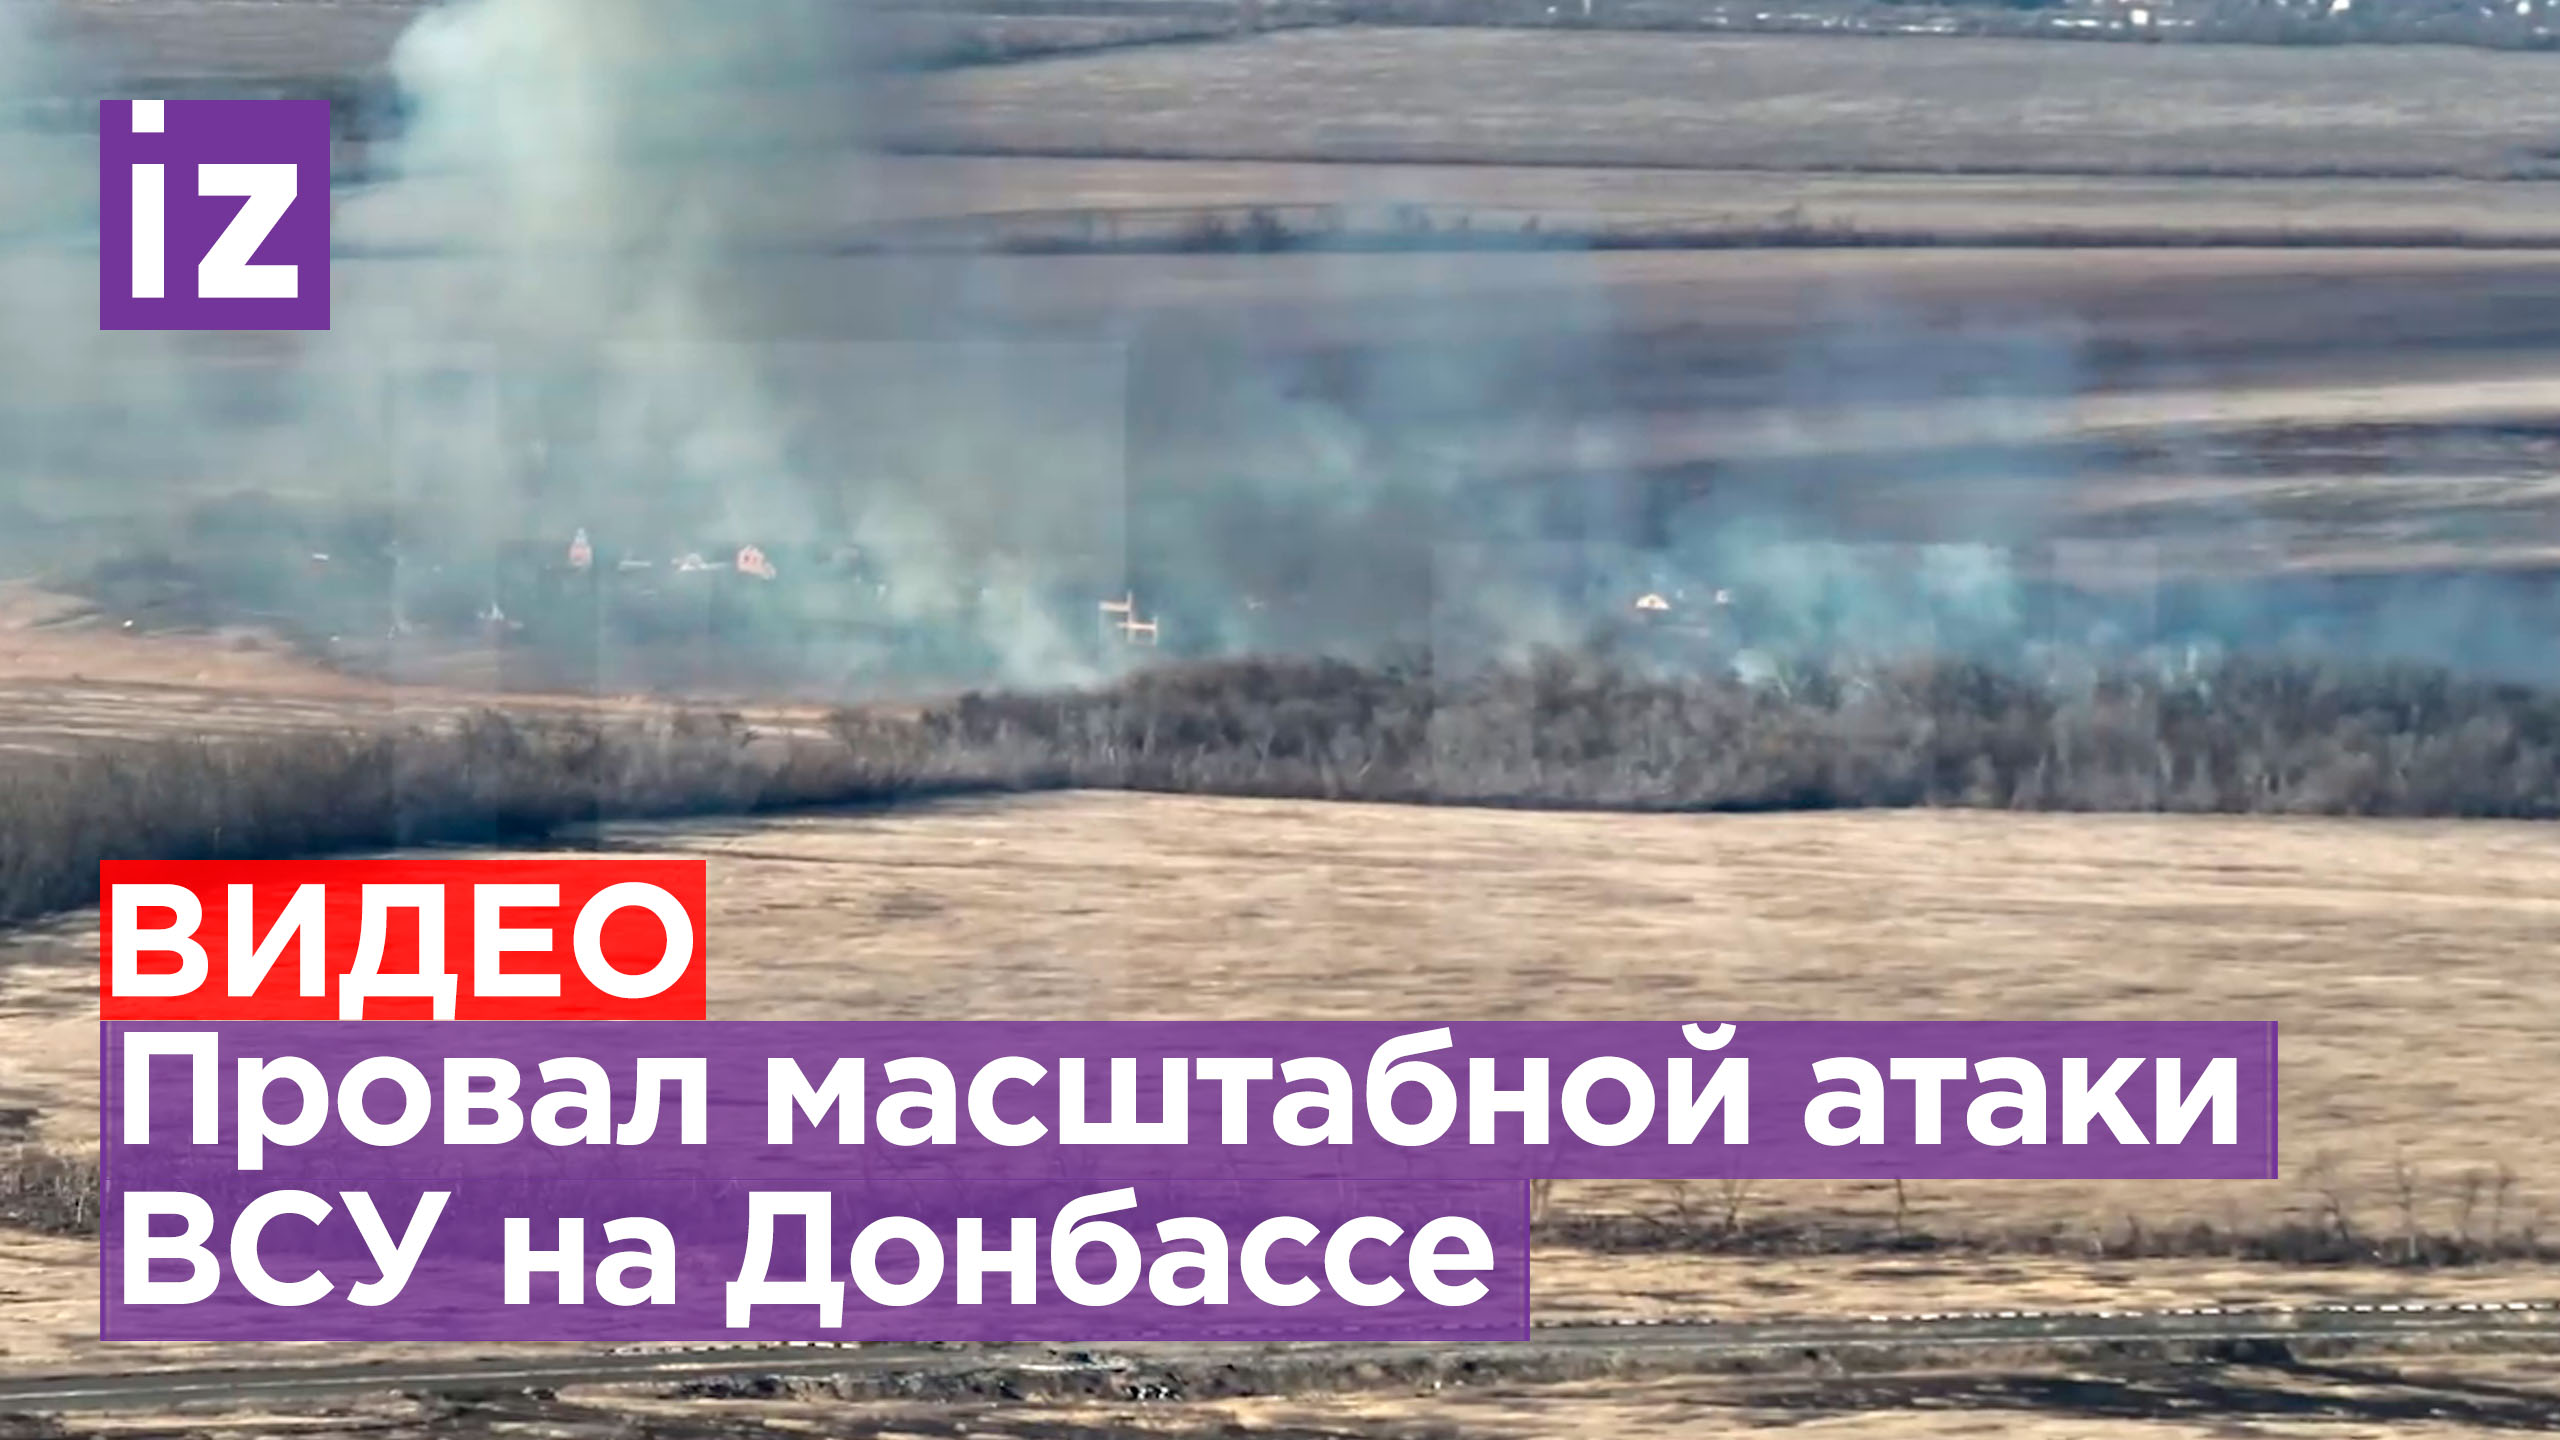 ВСУ понесли серьезные потери при попытке атаковать два поселка в ДНР / Известия